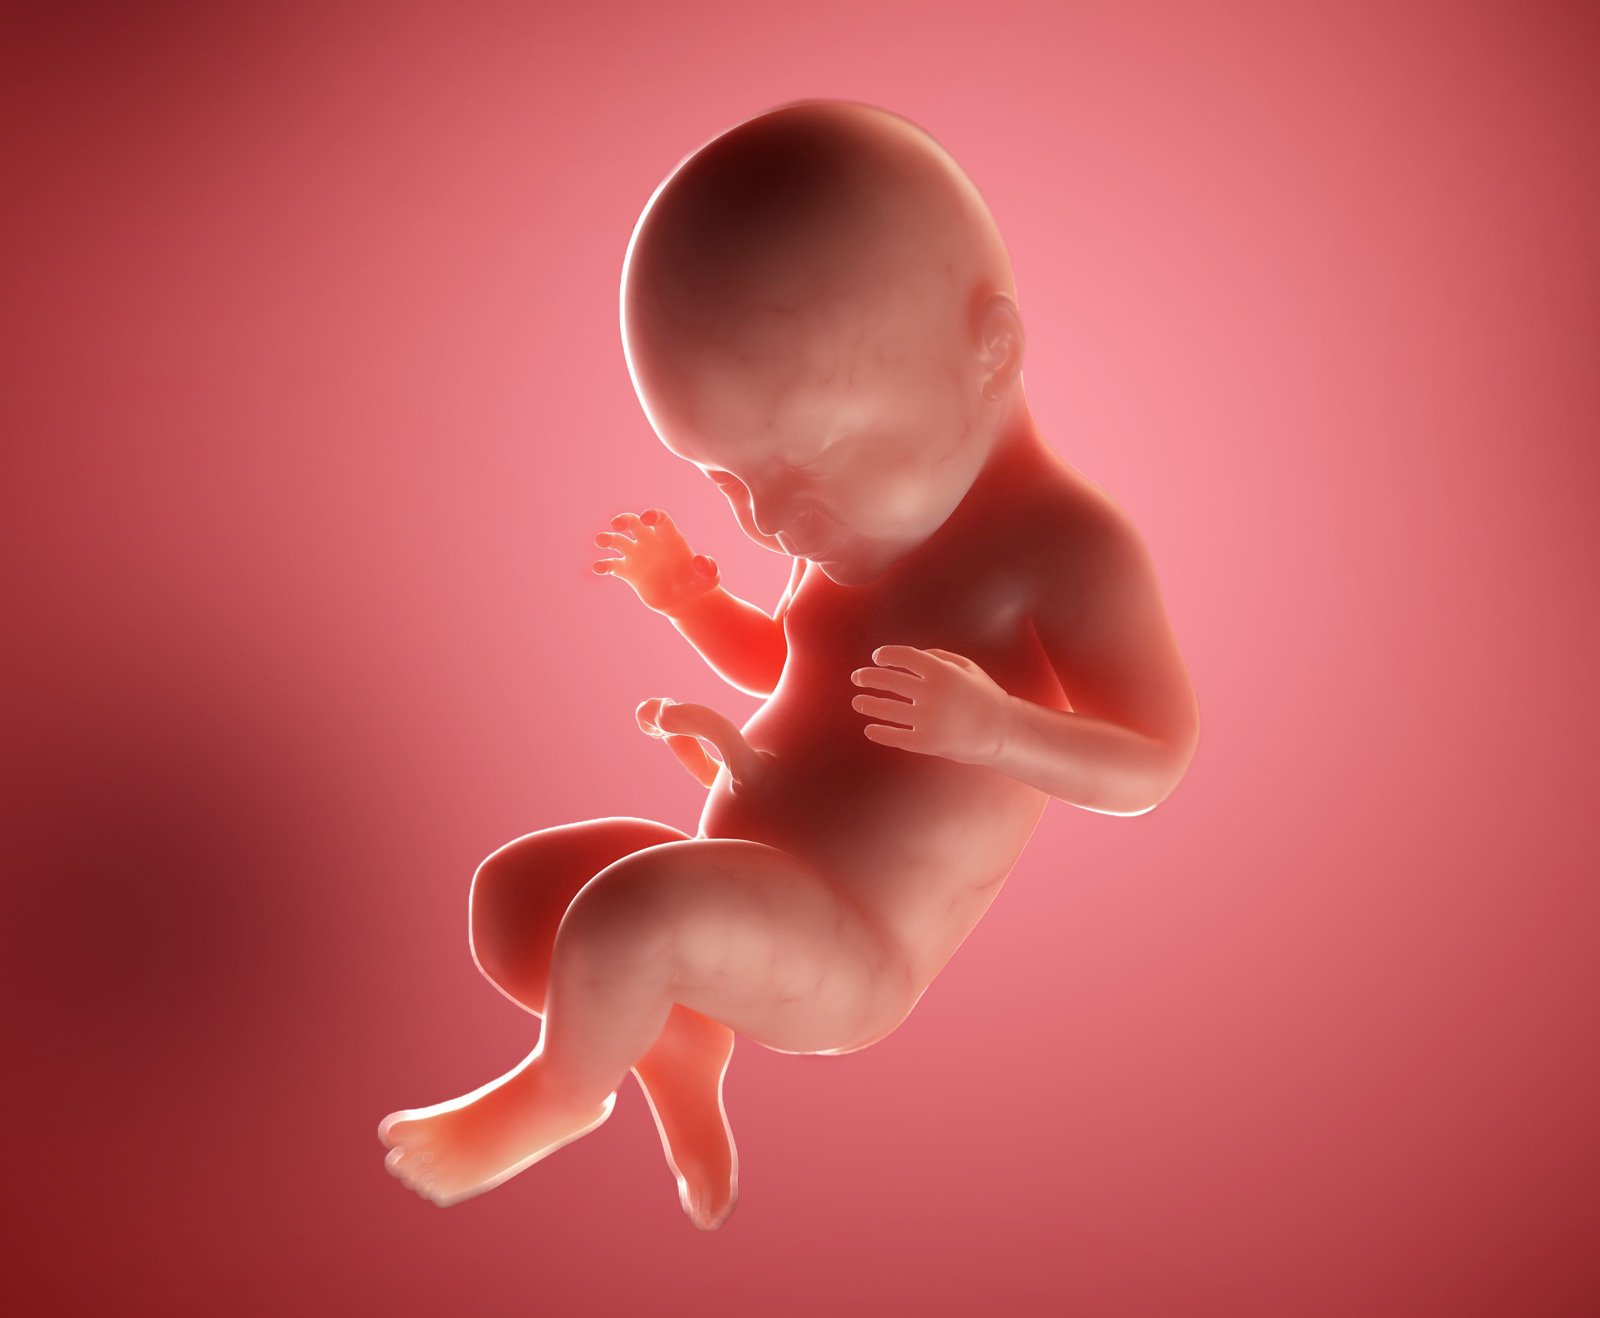 Как выглядит зародыш в 12 недель беременности фото